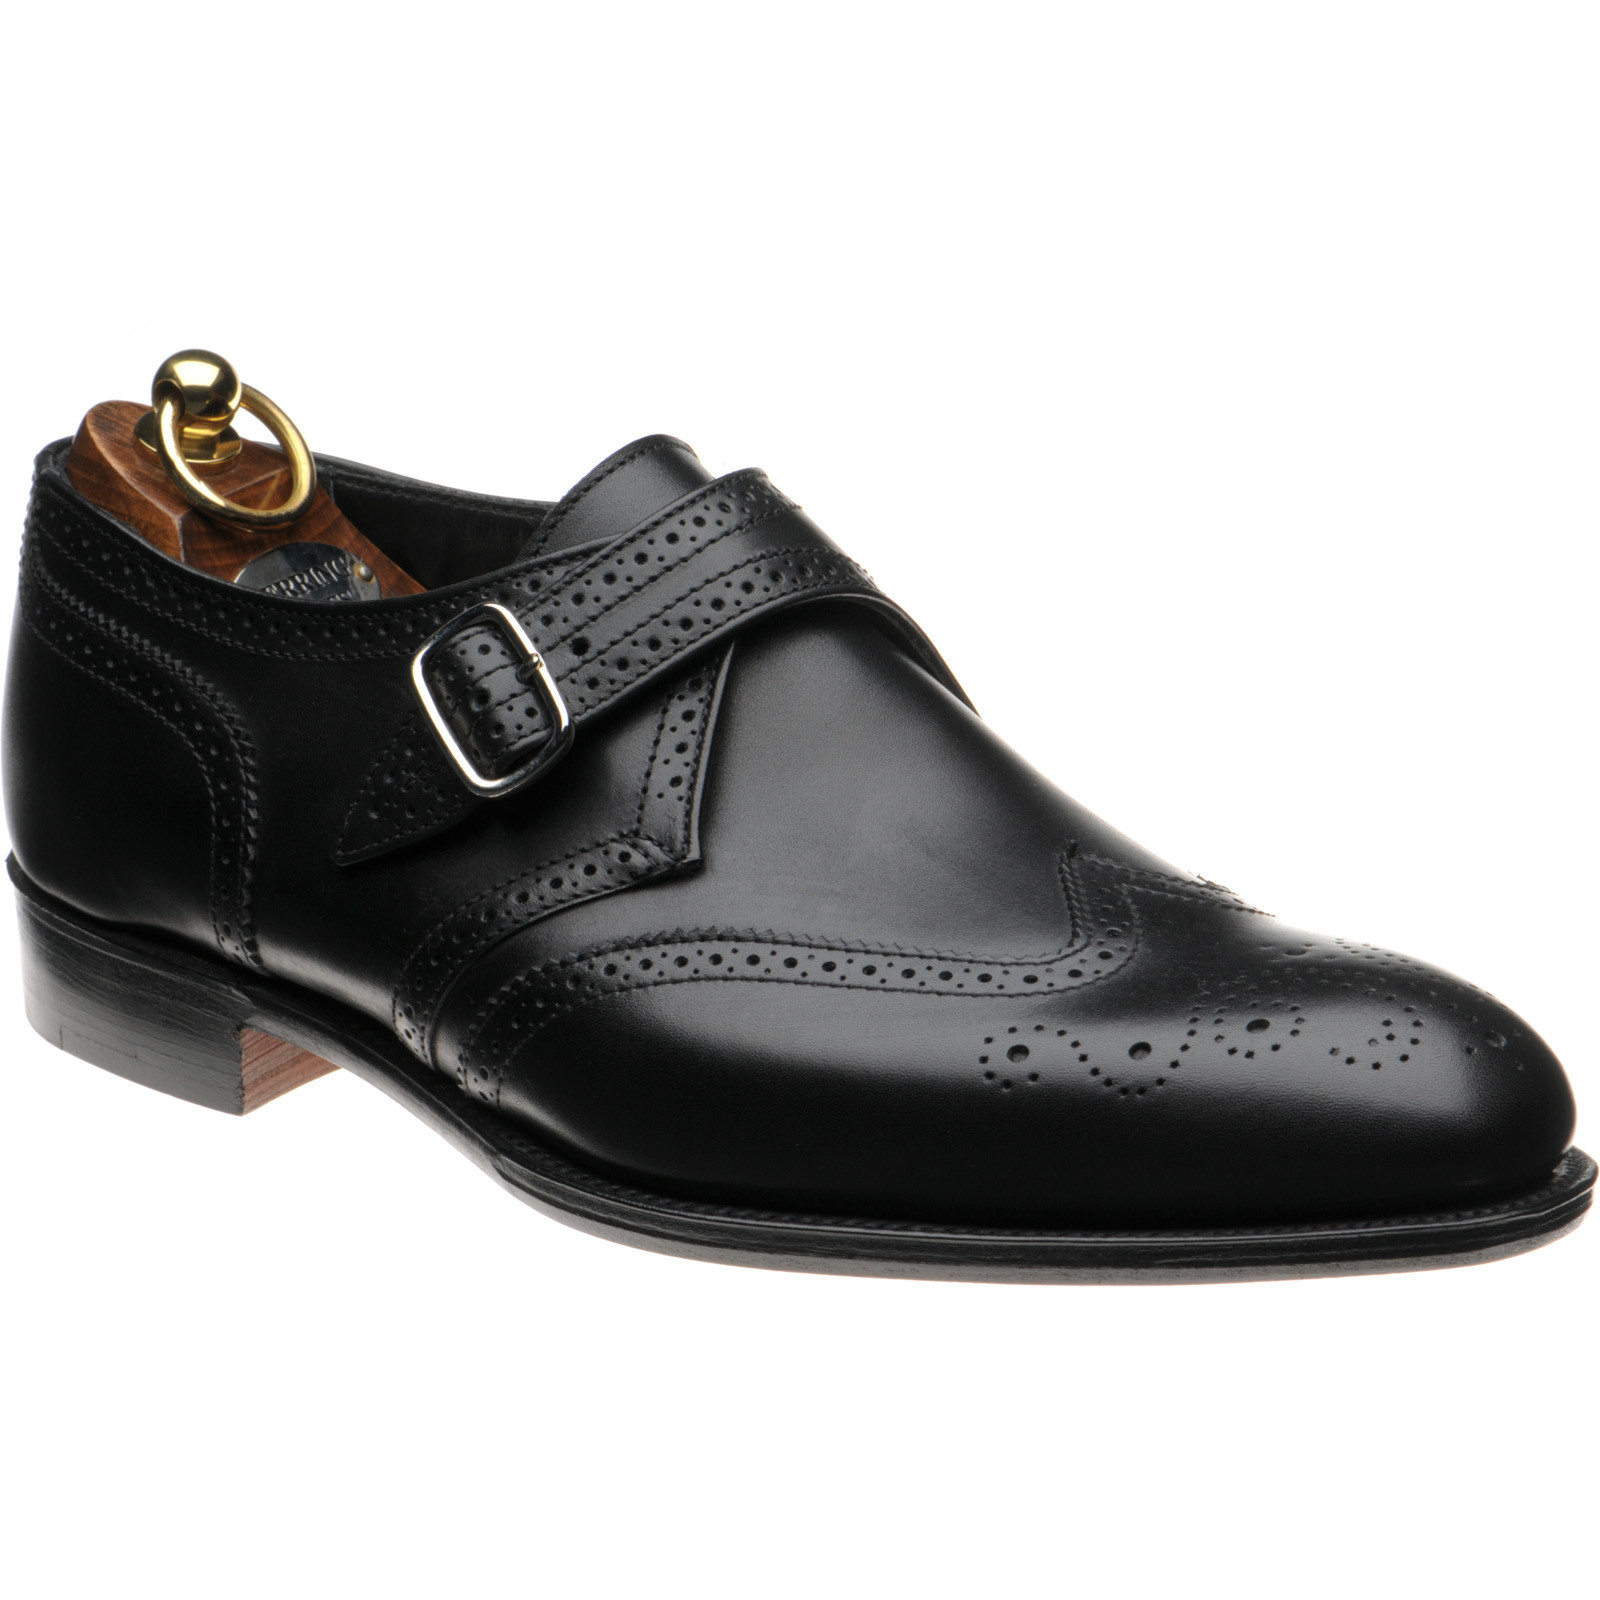 Herring shoes | Herring Premier | Philip II monk shoes in Black Calf at ...